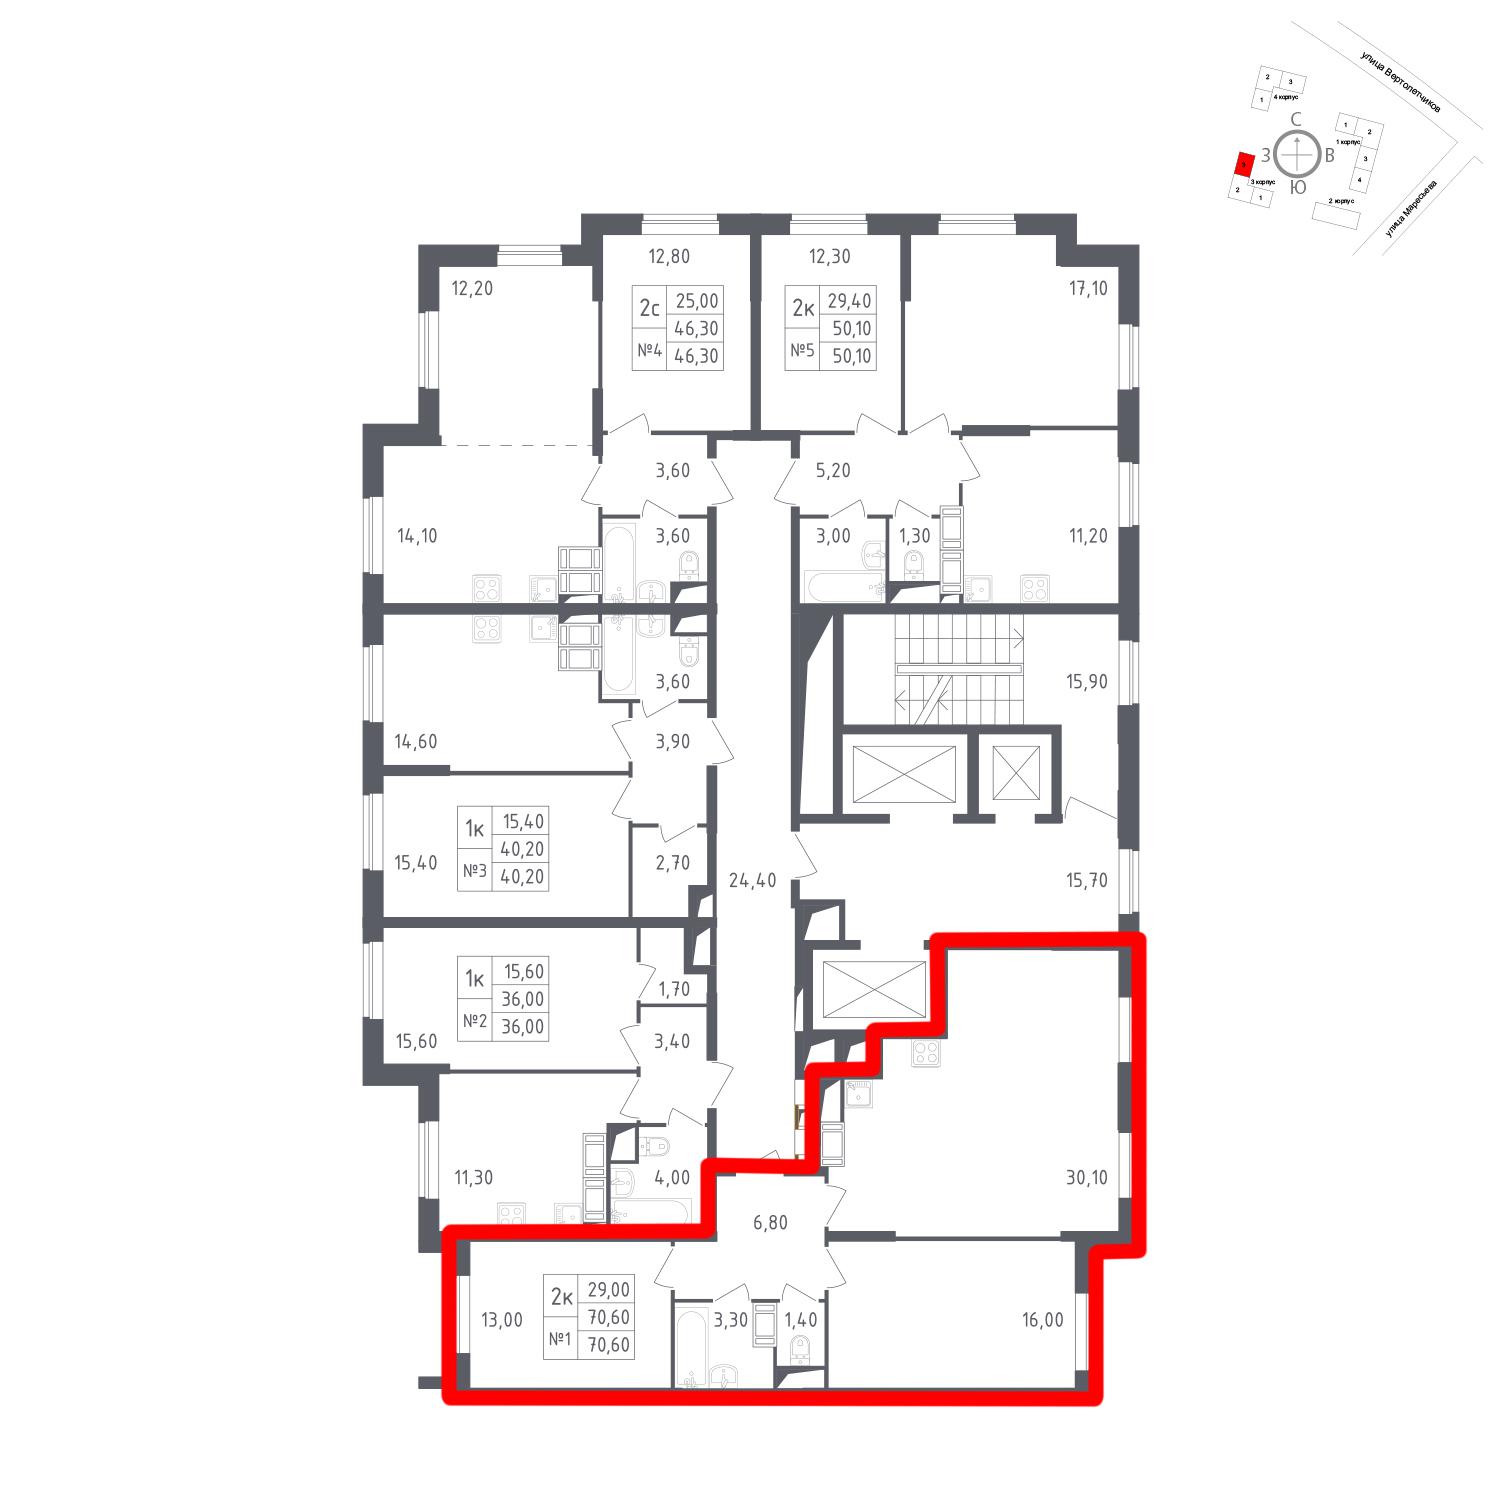 Продаётся 2-комнатная квартира в новостройке 70.6 кв.м. этаж 17/23 за 15 994 359 руб 